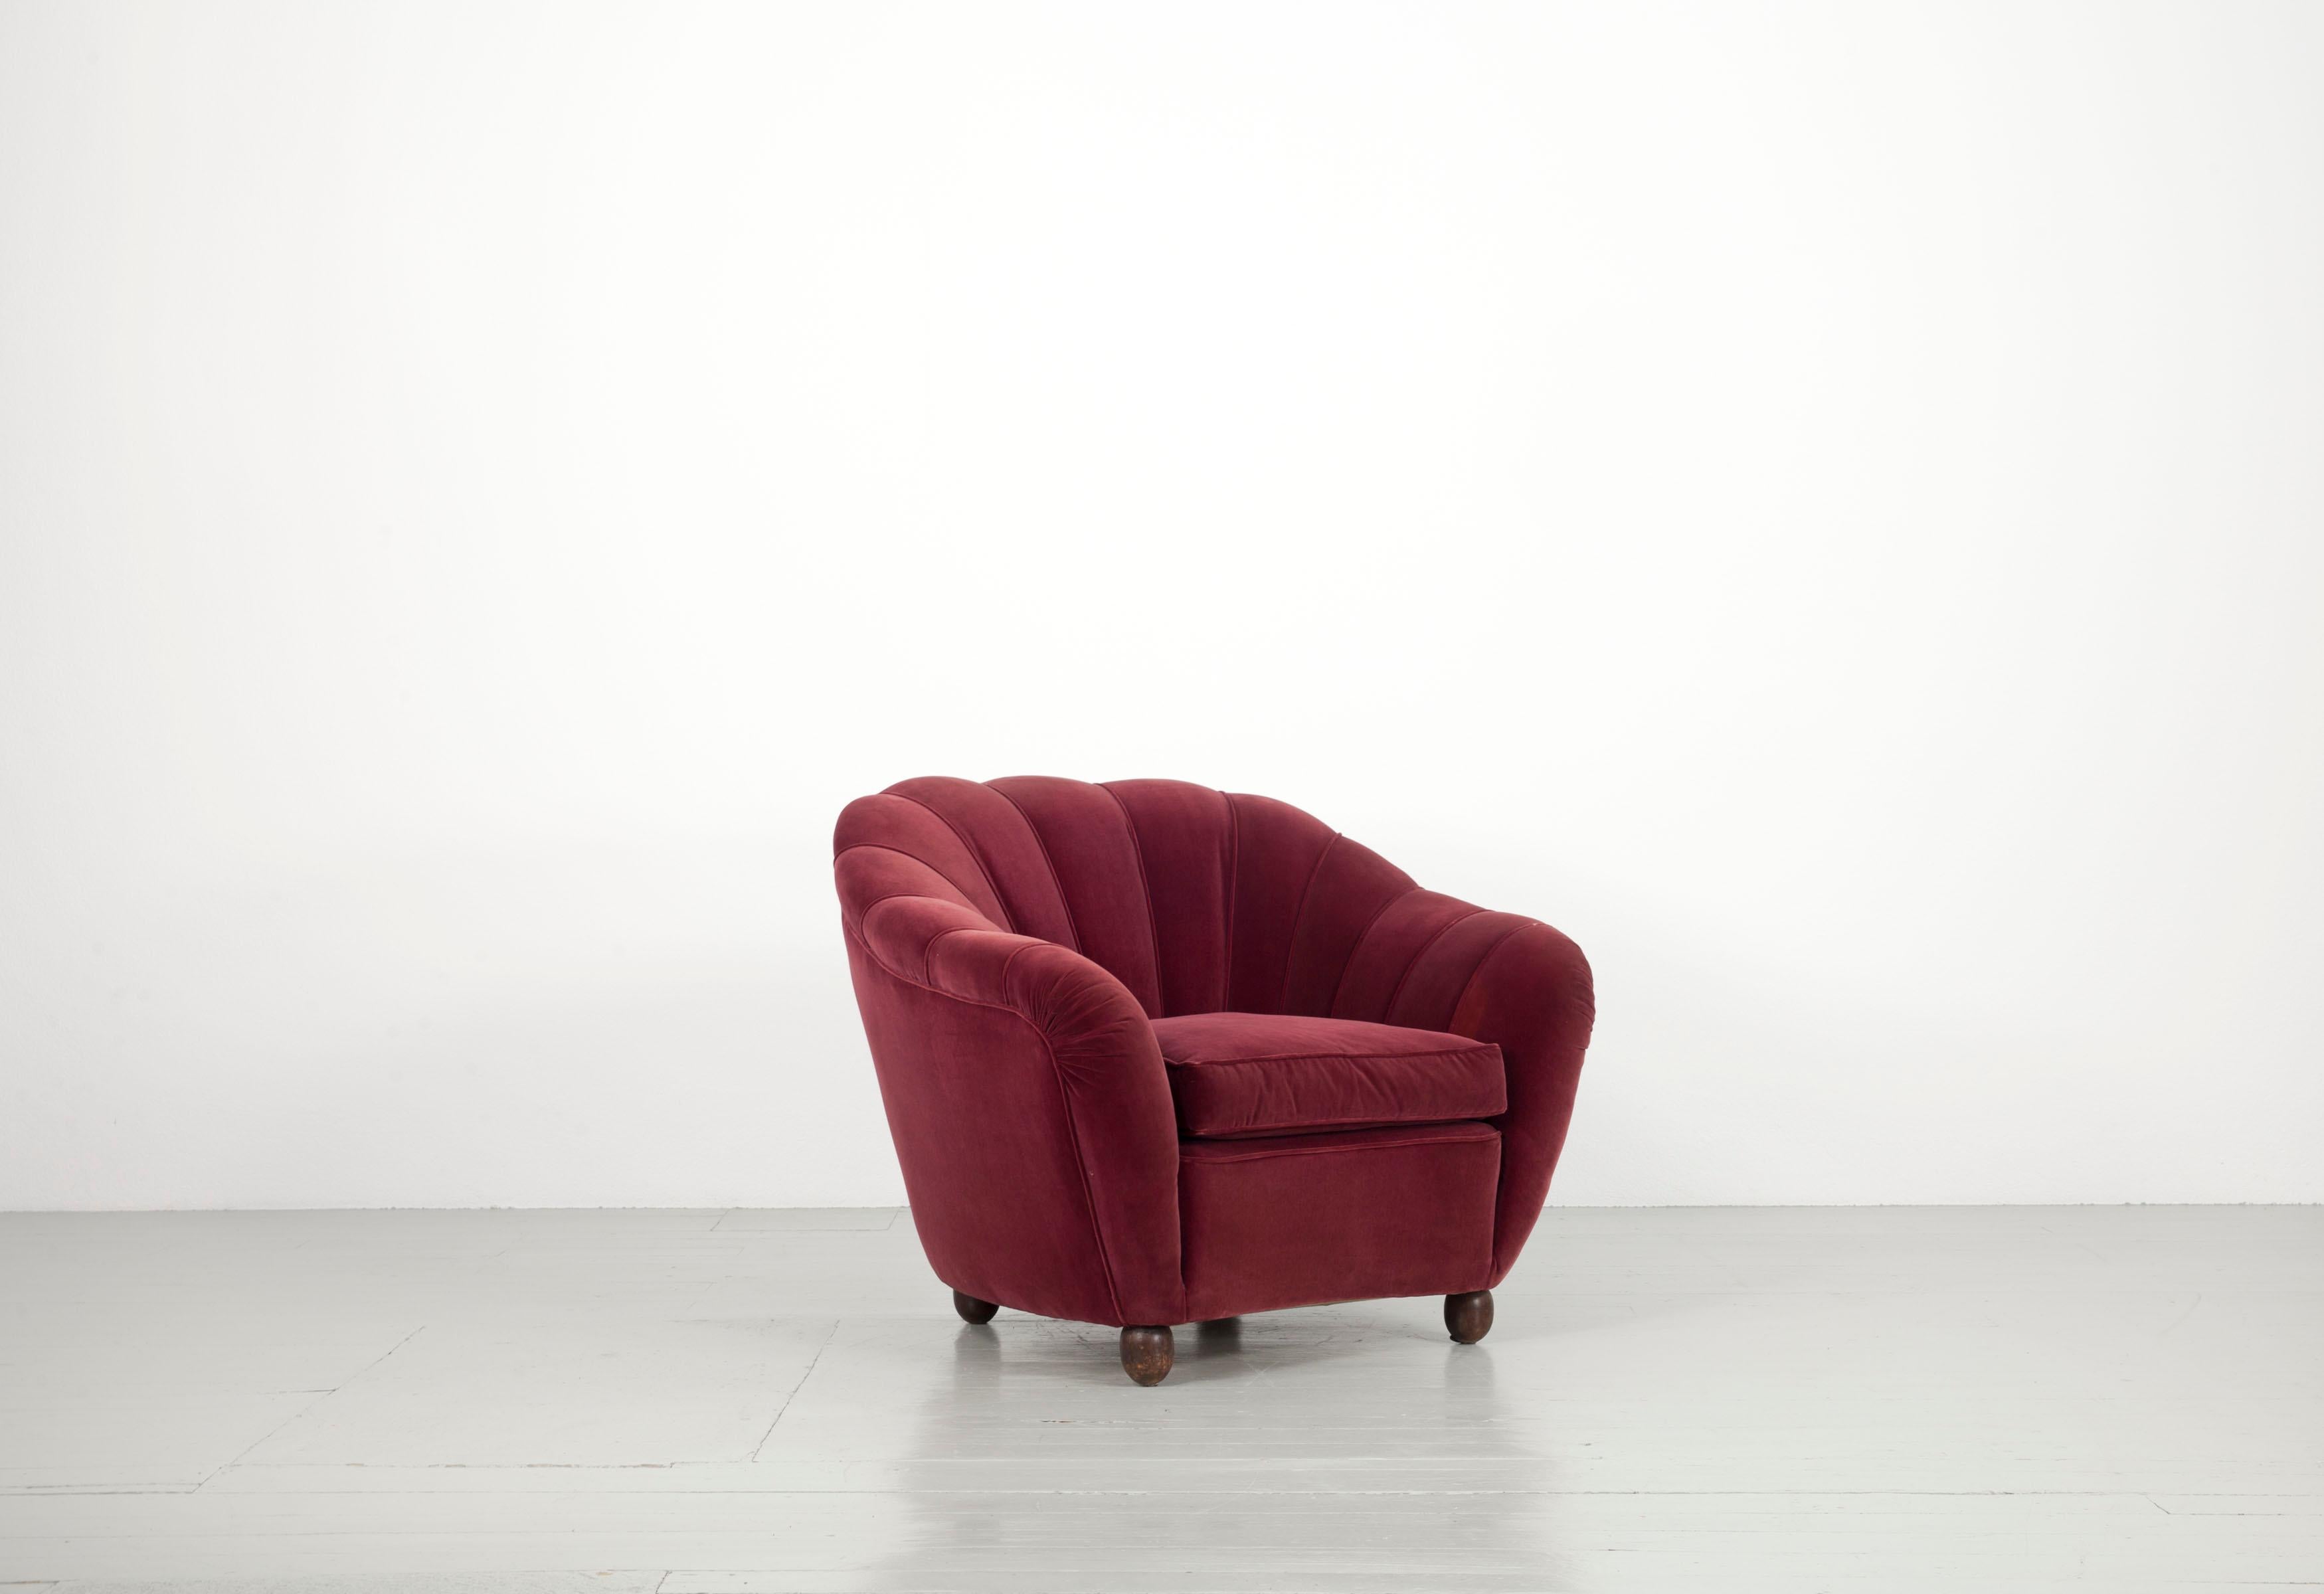 Cet ensemble de canapés se compose d'un canapé massif et de deux fauteuils de l'Italie des années 1940. Les fauteuils ainsi que le canapé sont tapissés d'un tissu en velours rouge foncé, dont la housse d'origine a été très bien nettoyée. Les meubles